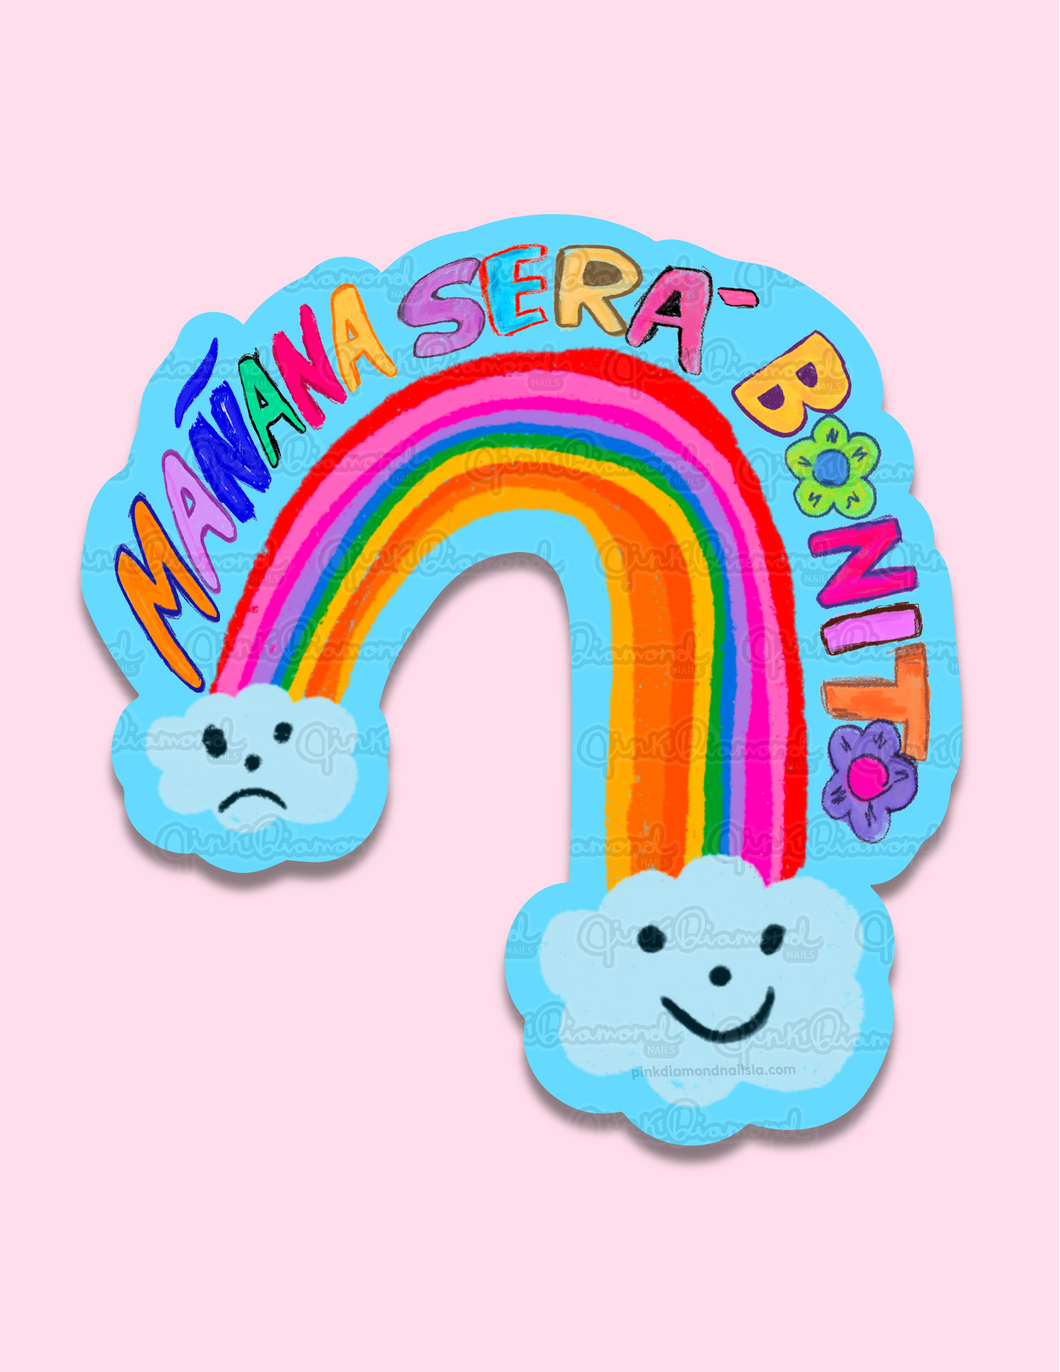 manana sera bonito Rainbow and font - Vinyl sticker